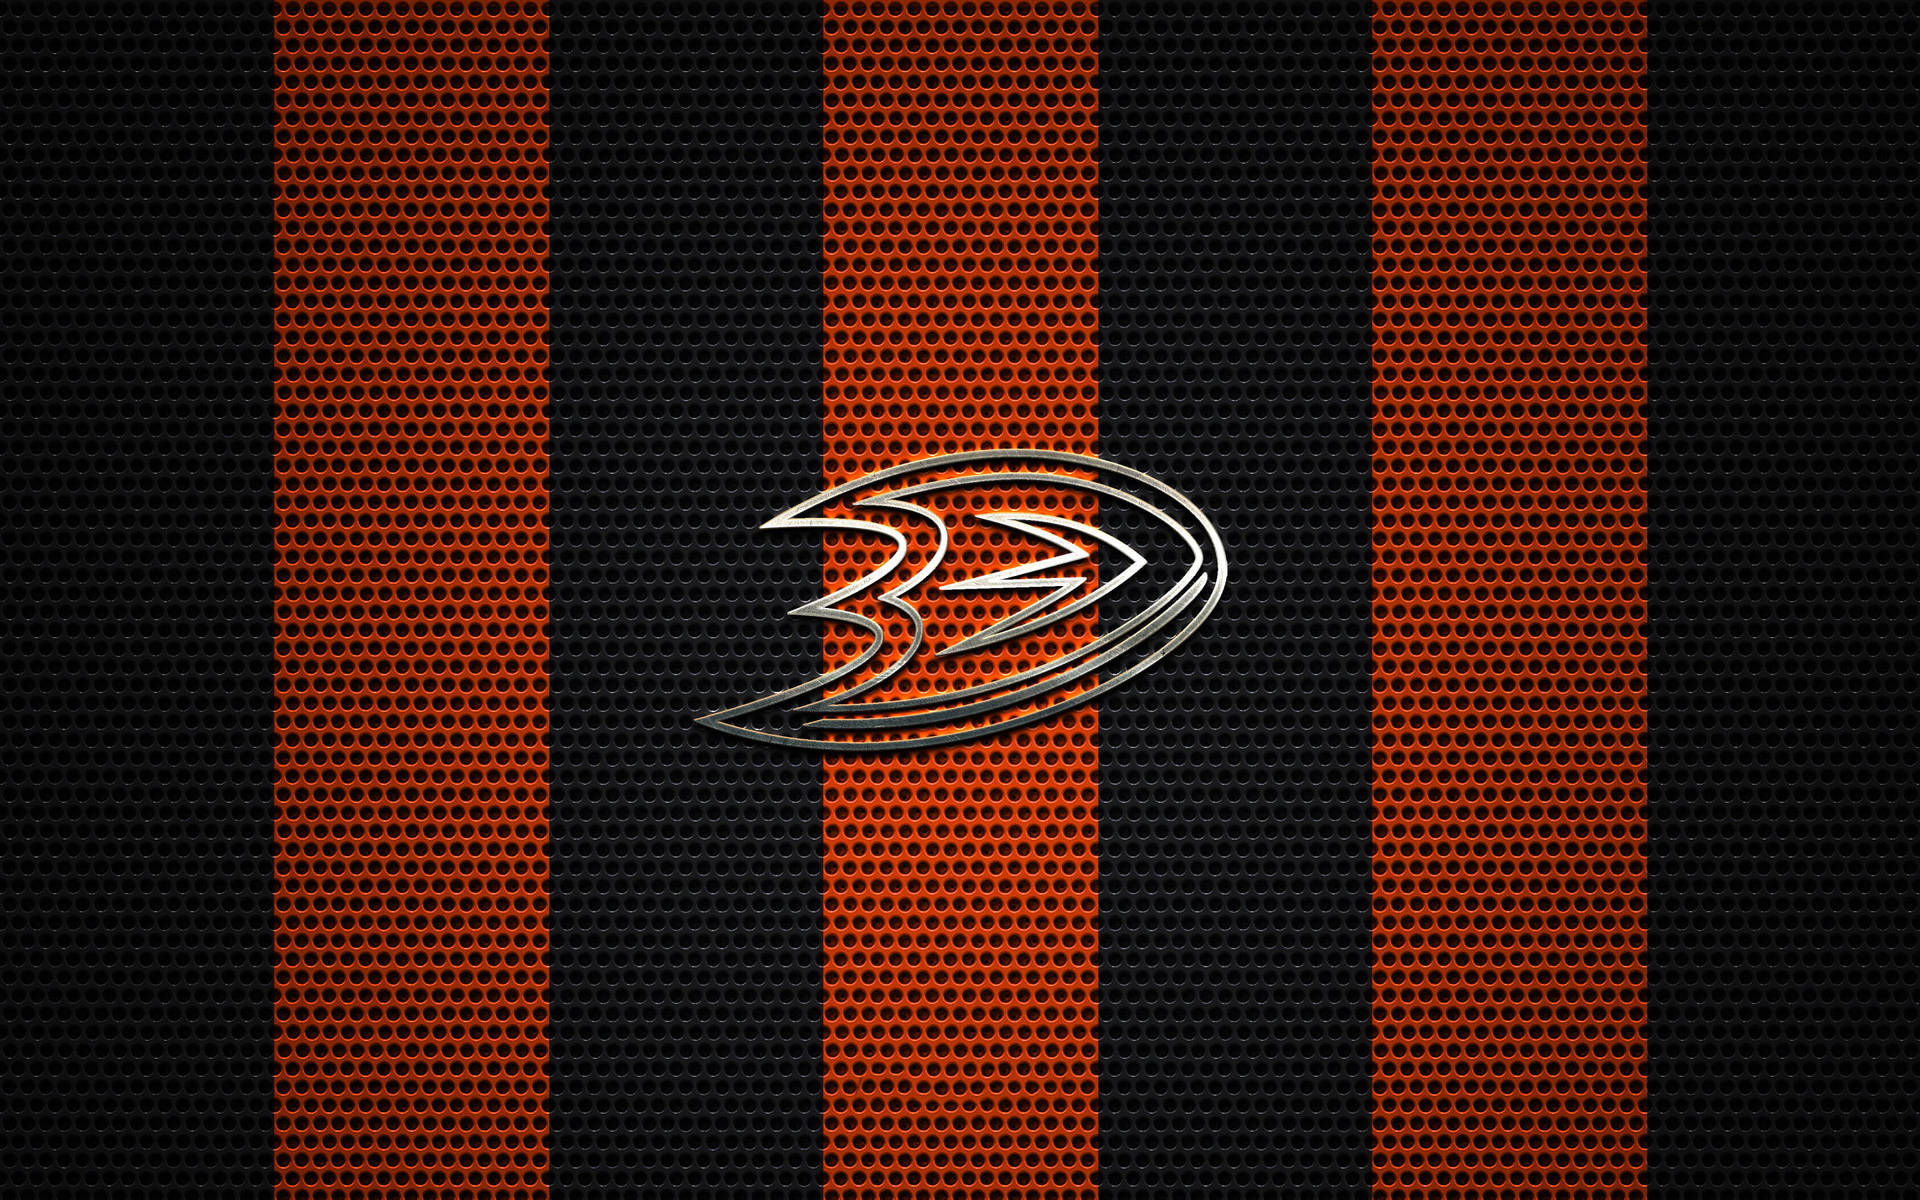 Anaheim Ducks Logo On Mesh Background